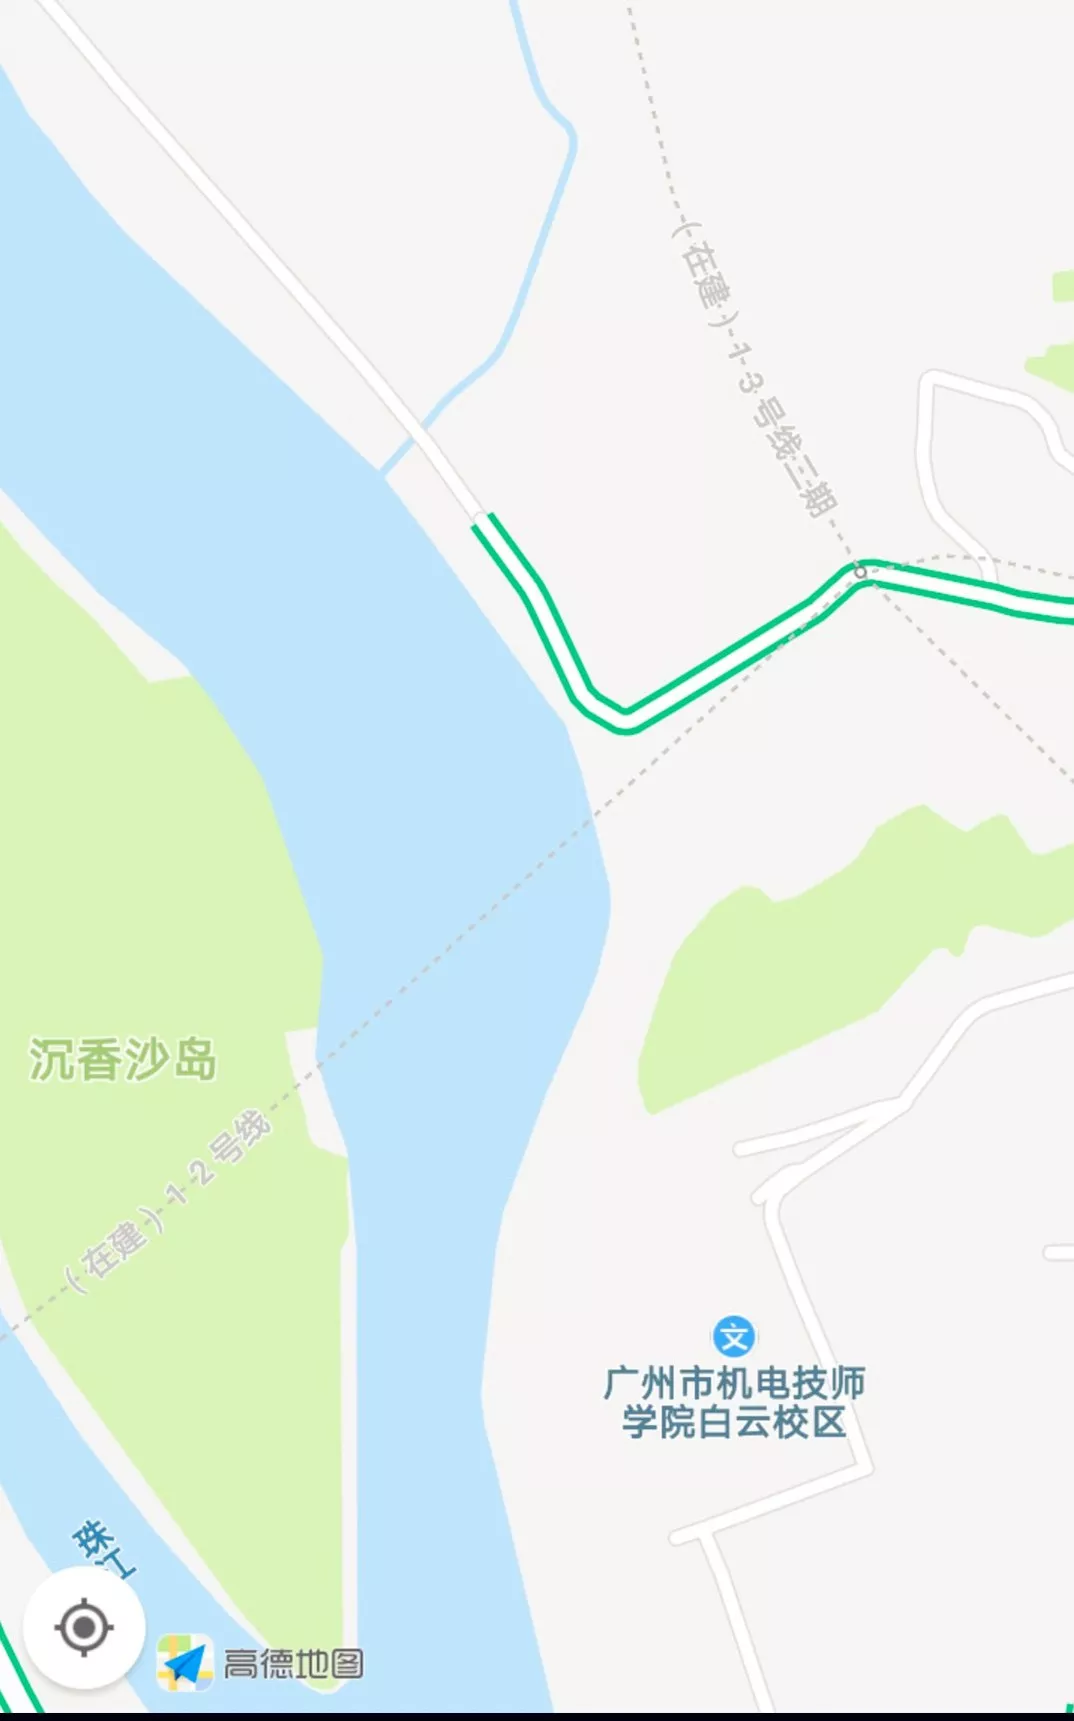 广州地铁2018年攻城拔寨,12号线今年开工!高德地图现图片